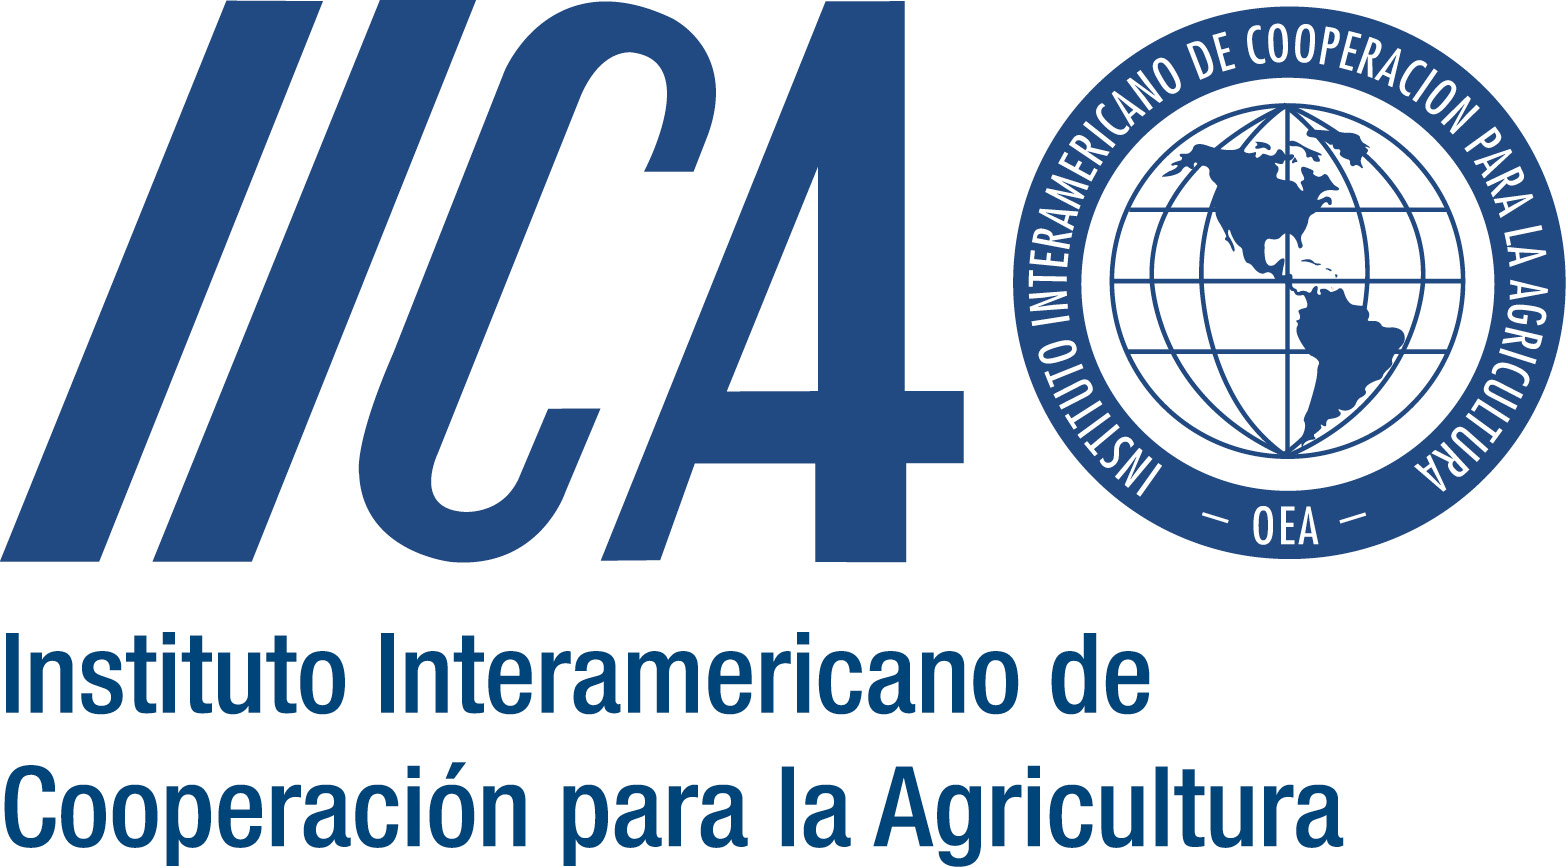 |El IICA advierte sobre la necesidad de ingresos dignos para los agricultores